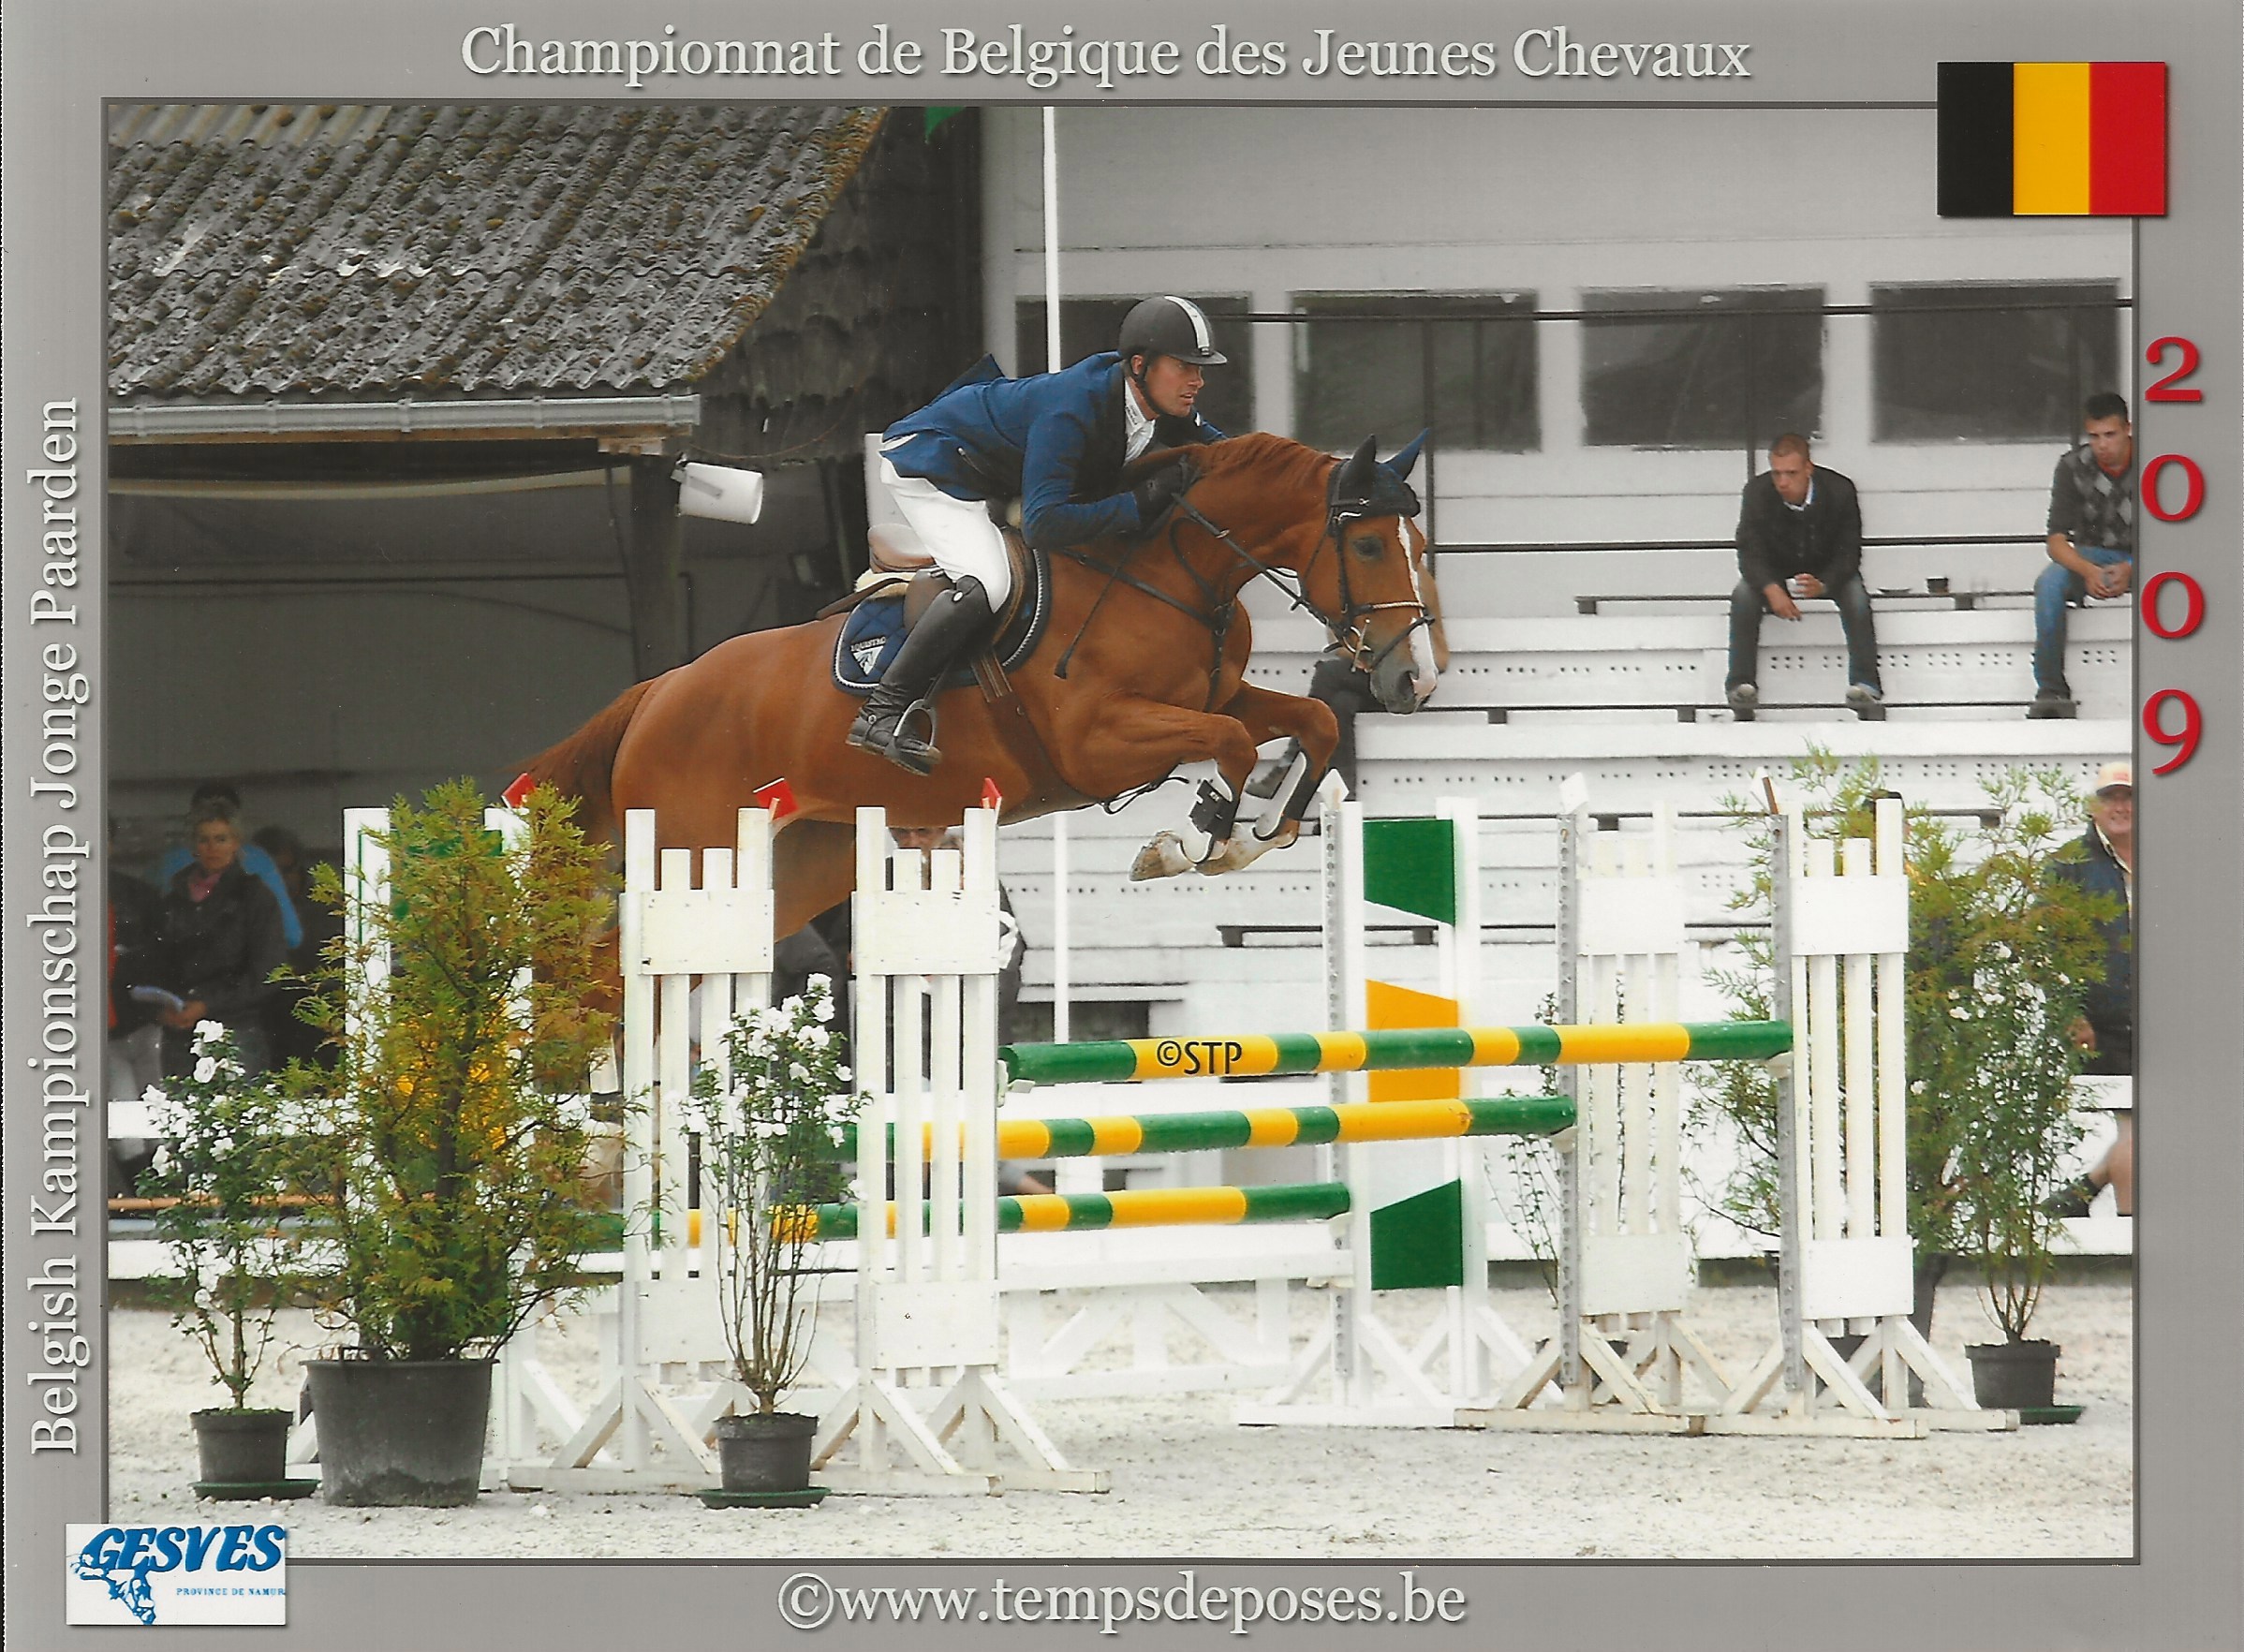 À quatre ans, Flora de Mariposa avait décroché la mention “Élite” dans le championnat de Belgique des jeunes chevaux. 